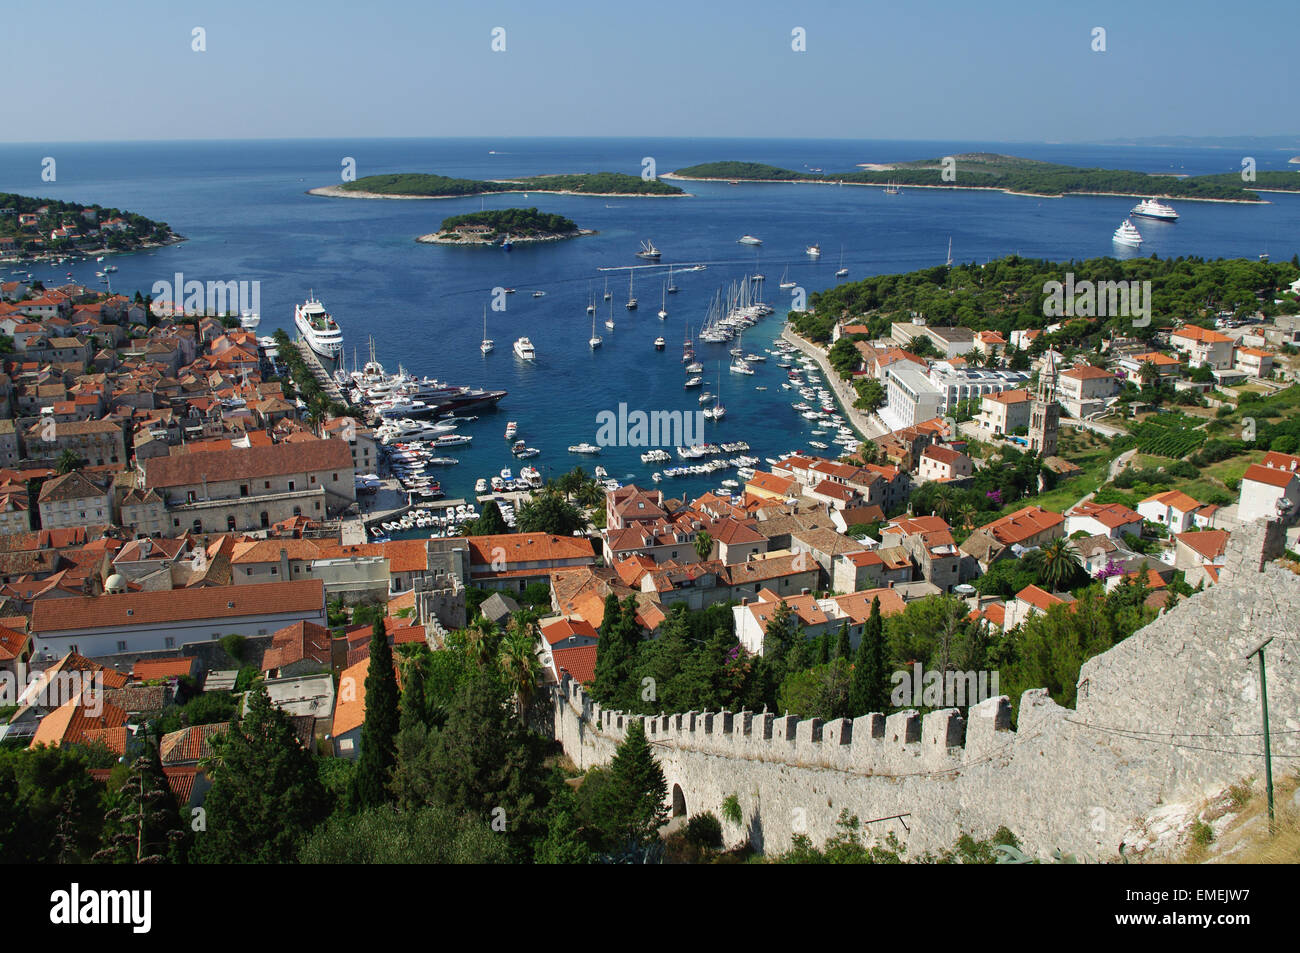 Port de destination touristique Hvar. Destination touristique populaire en Croatie. Banque D'Images